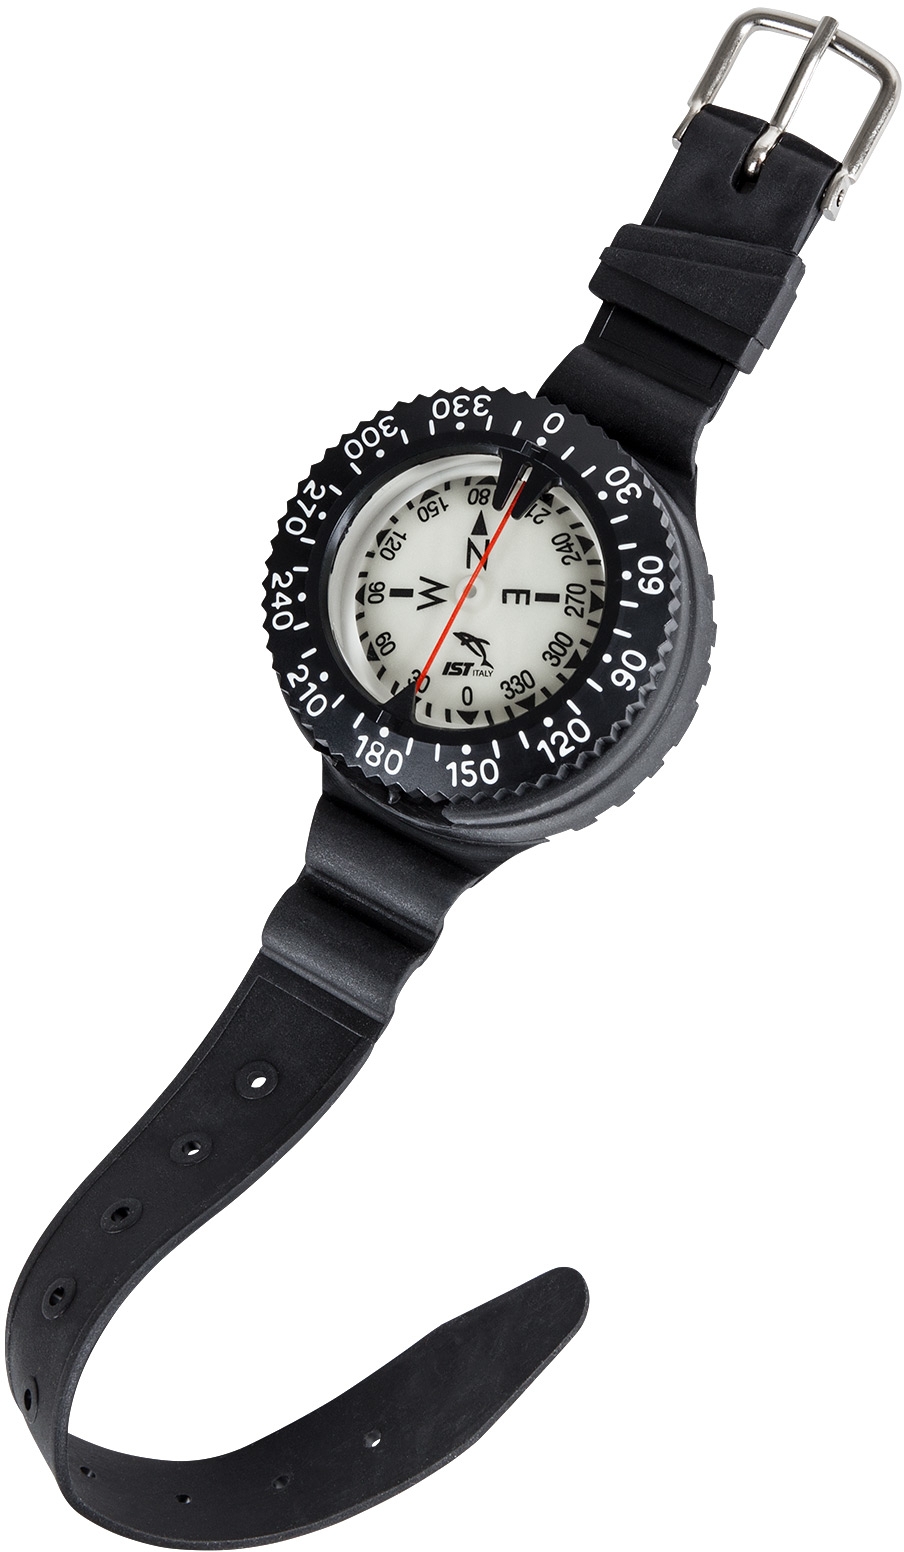 IST GP-23 Wrist Compass